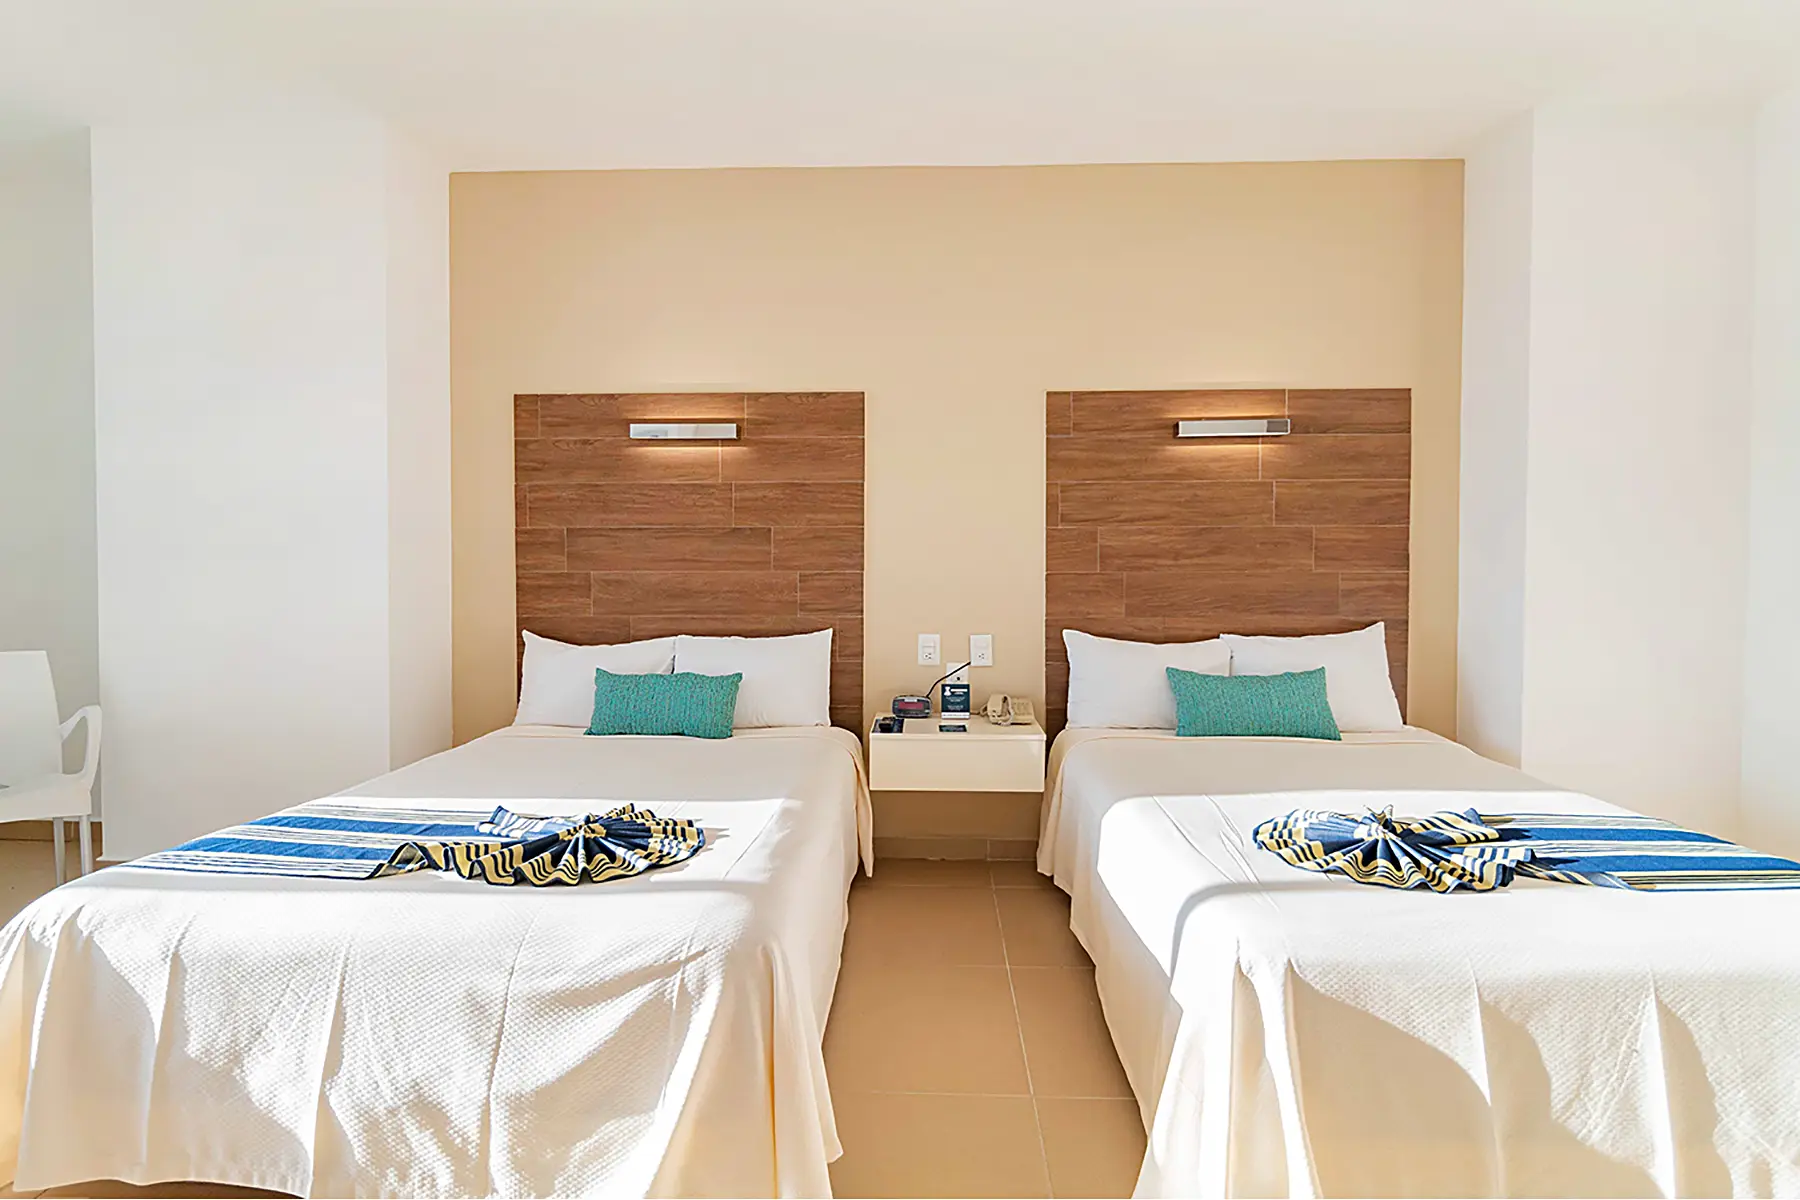 Habitación junior suite vista al mar con dos camas matrimoniales, televisión, mesa con dos sillas, mobiliario y luminaria de Hotel Pacific Palace Mazatlán